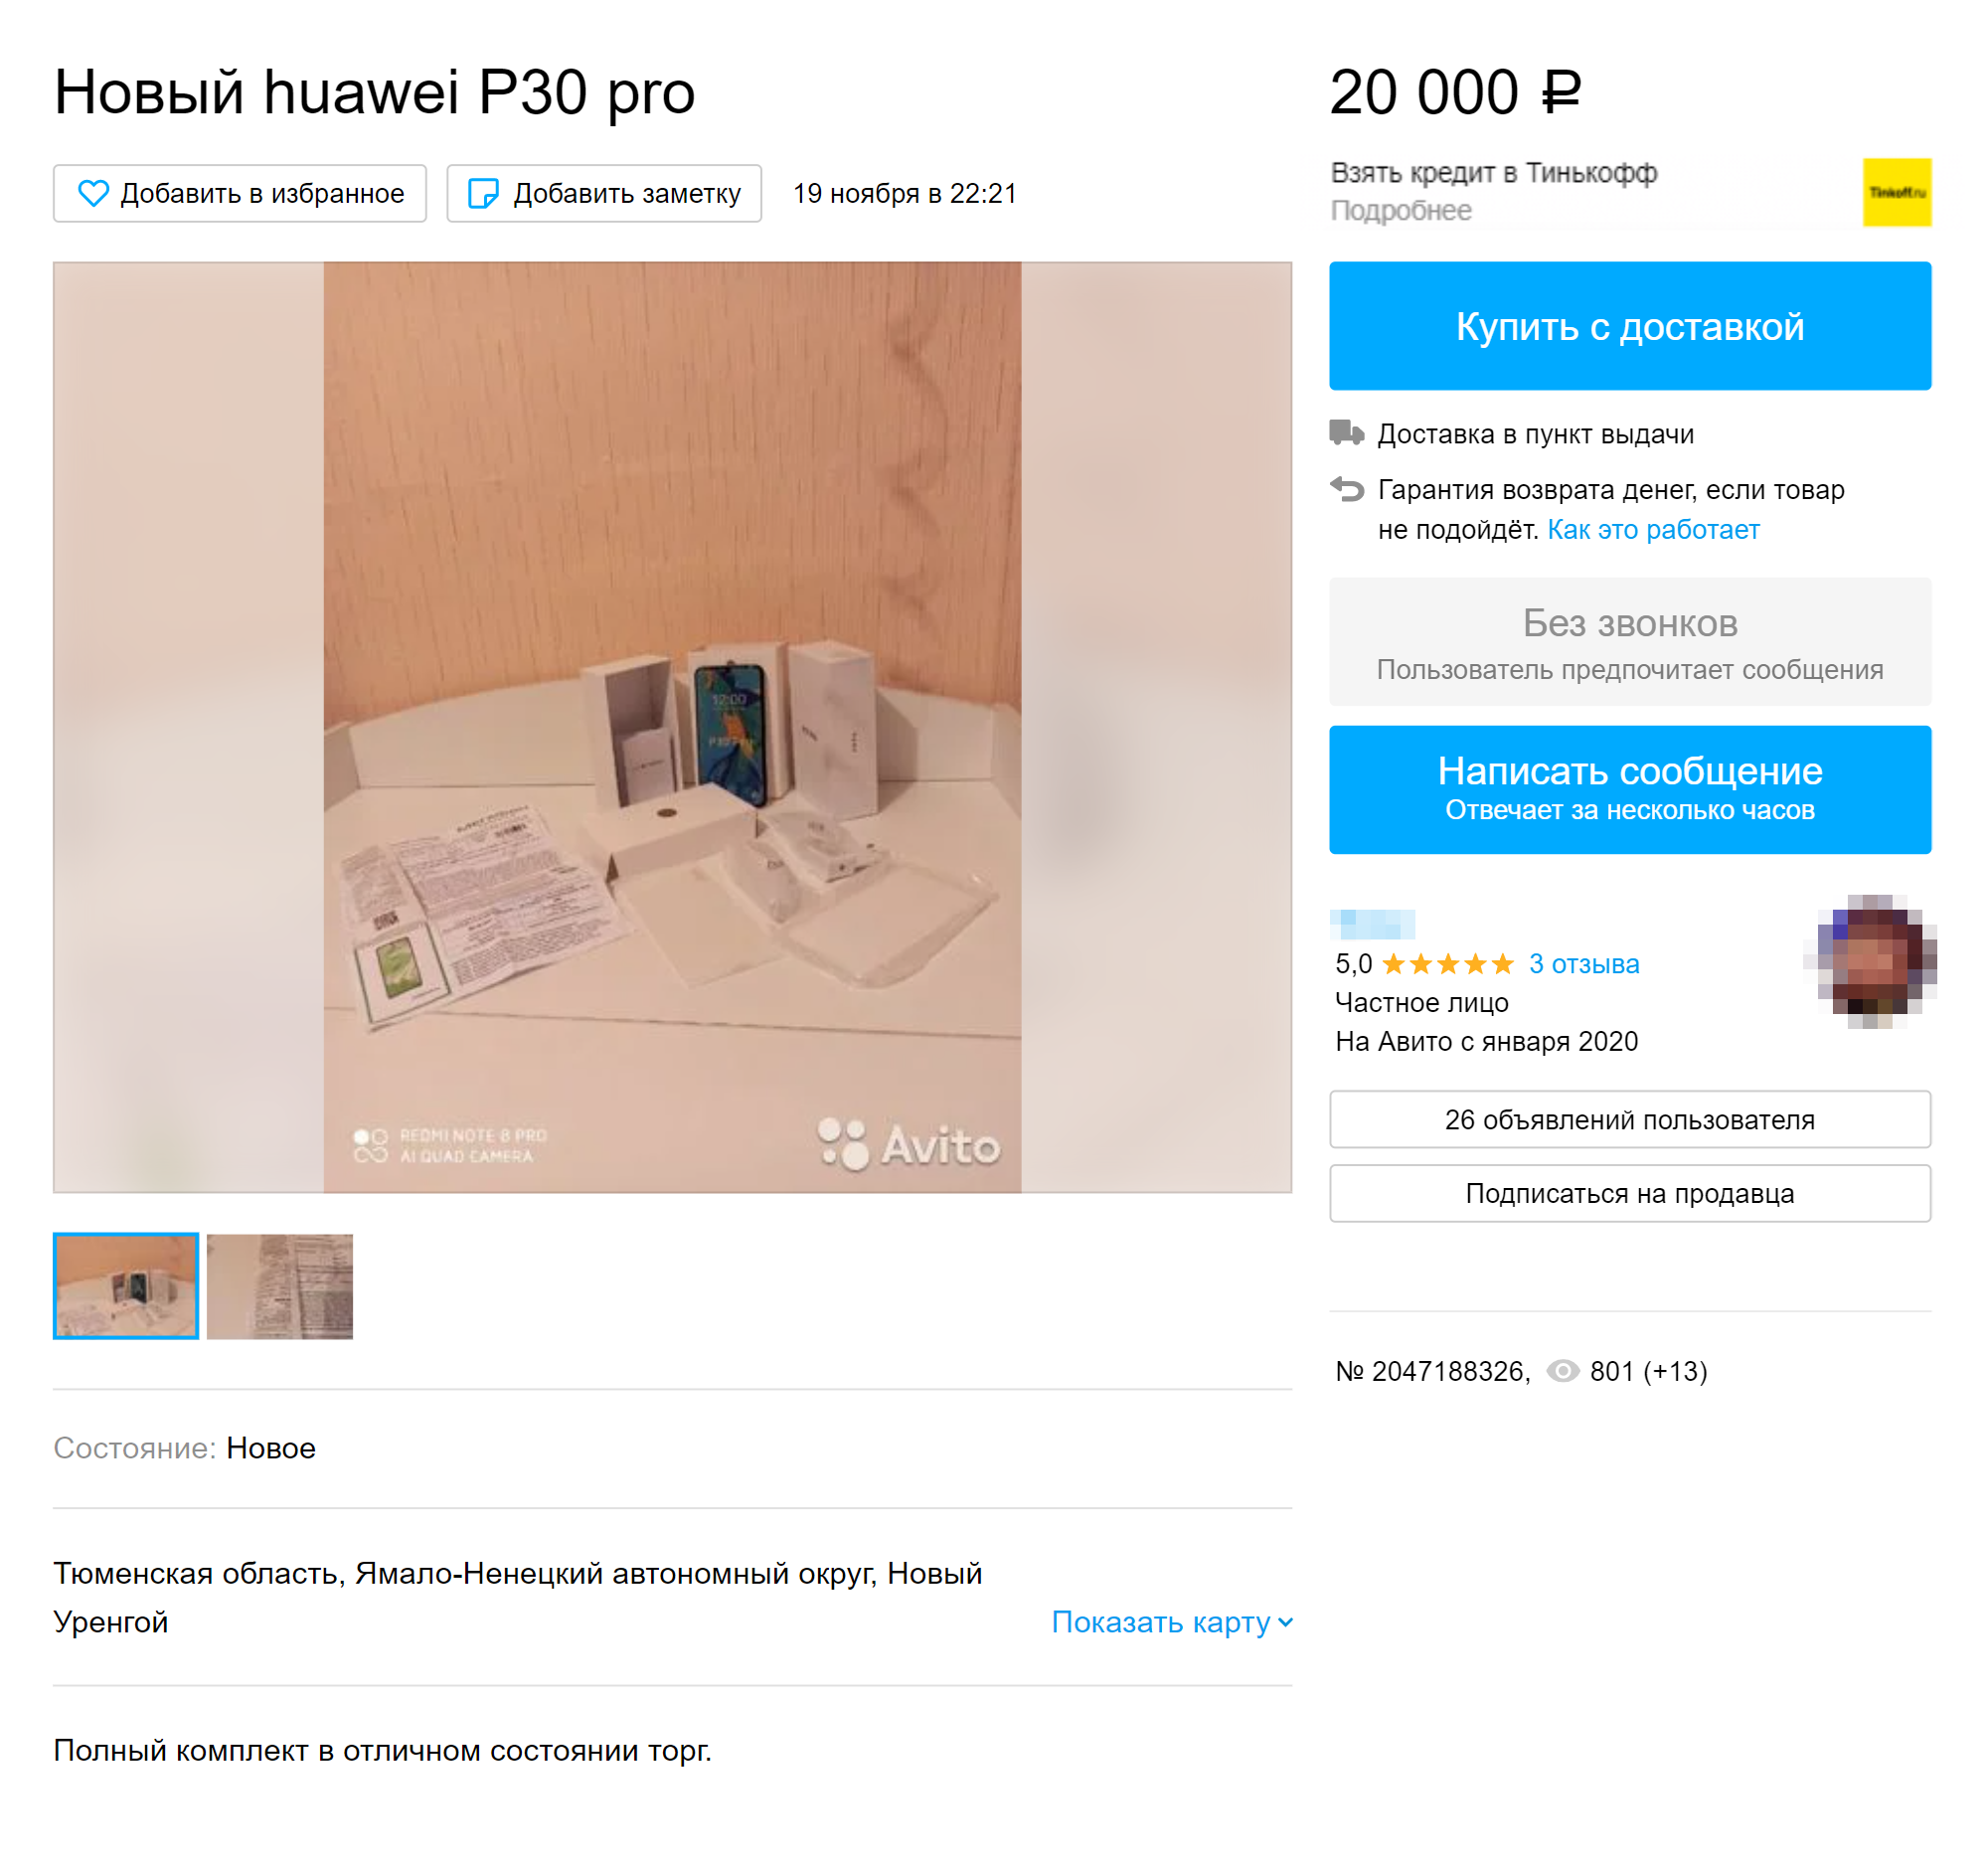 Цена нового телефона в объявлении сильно занижена. Продавец приложил чек о покупке, который оказался фальшивым. Источник: avito.ru